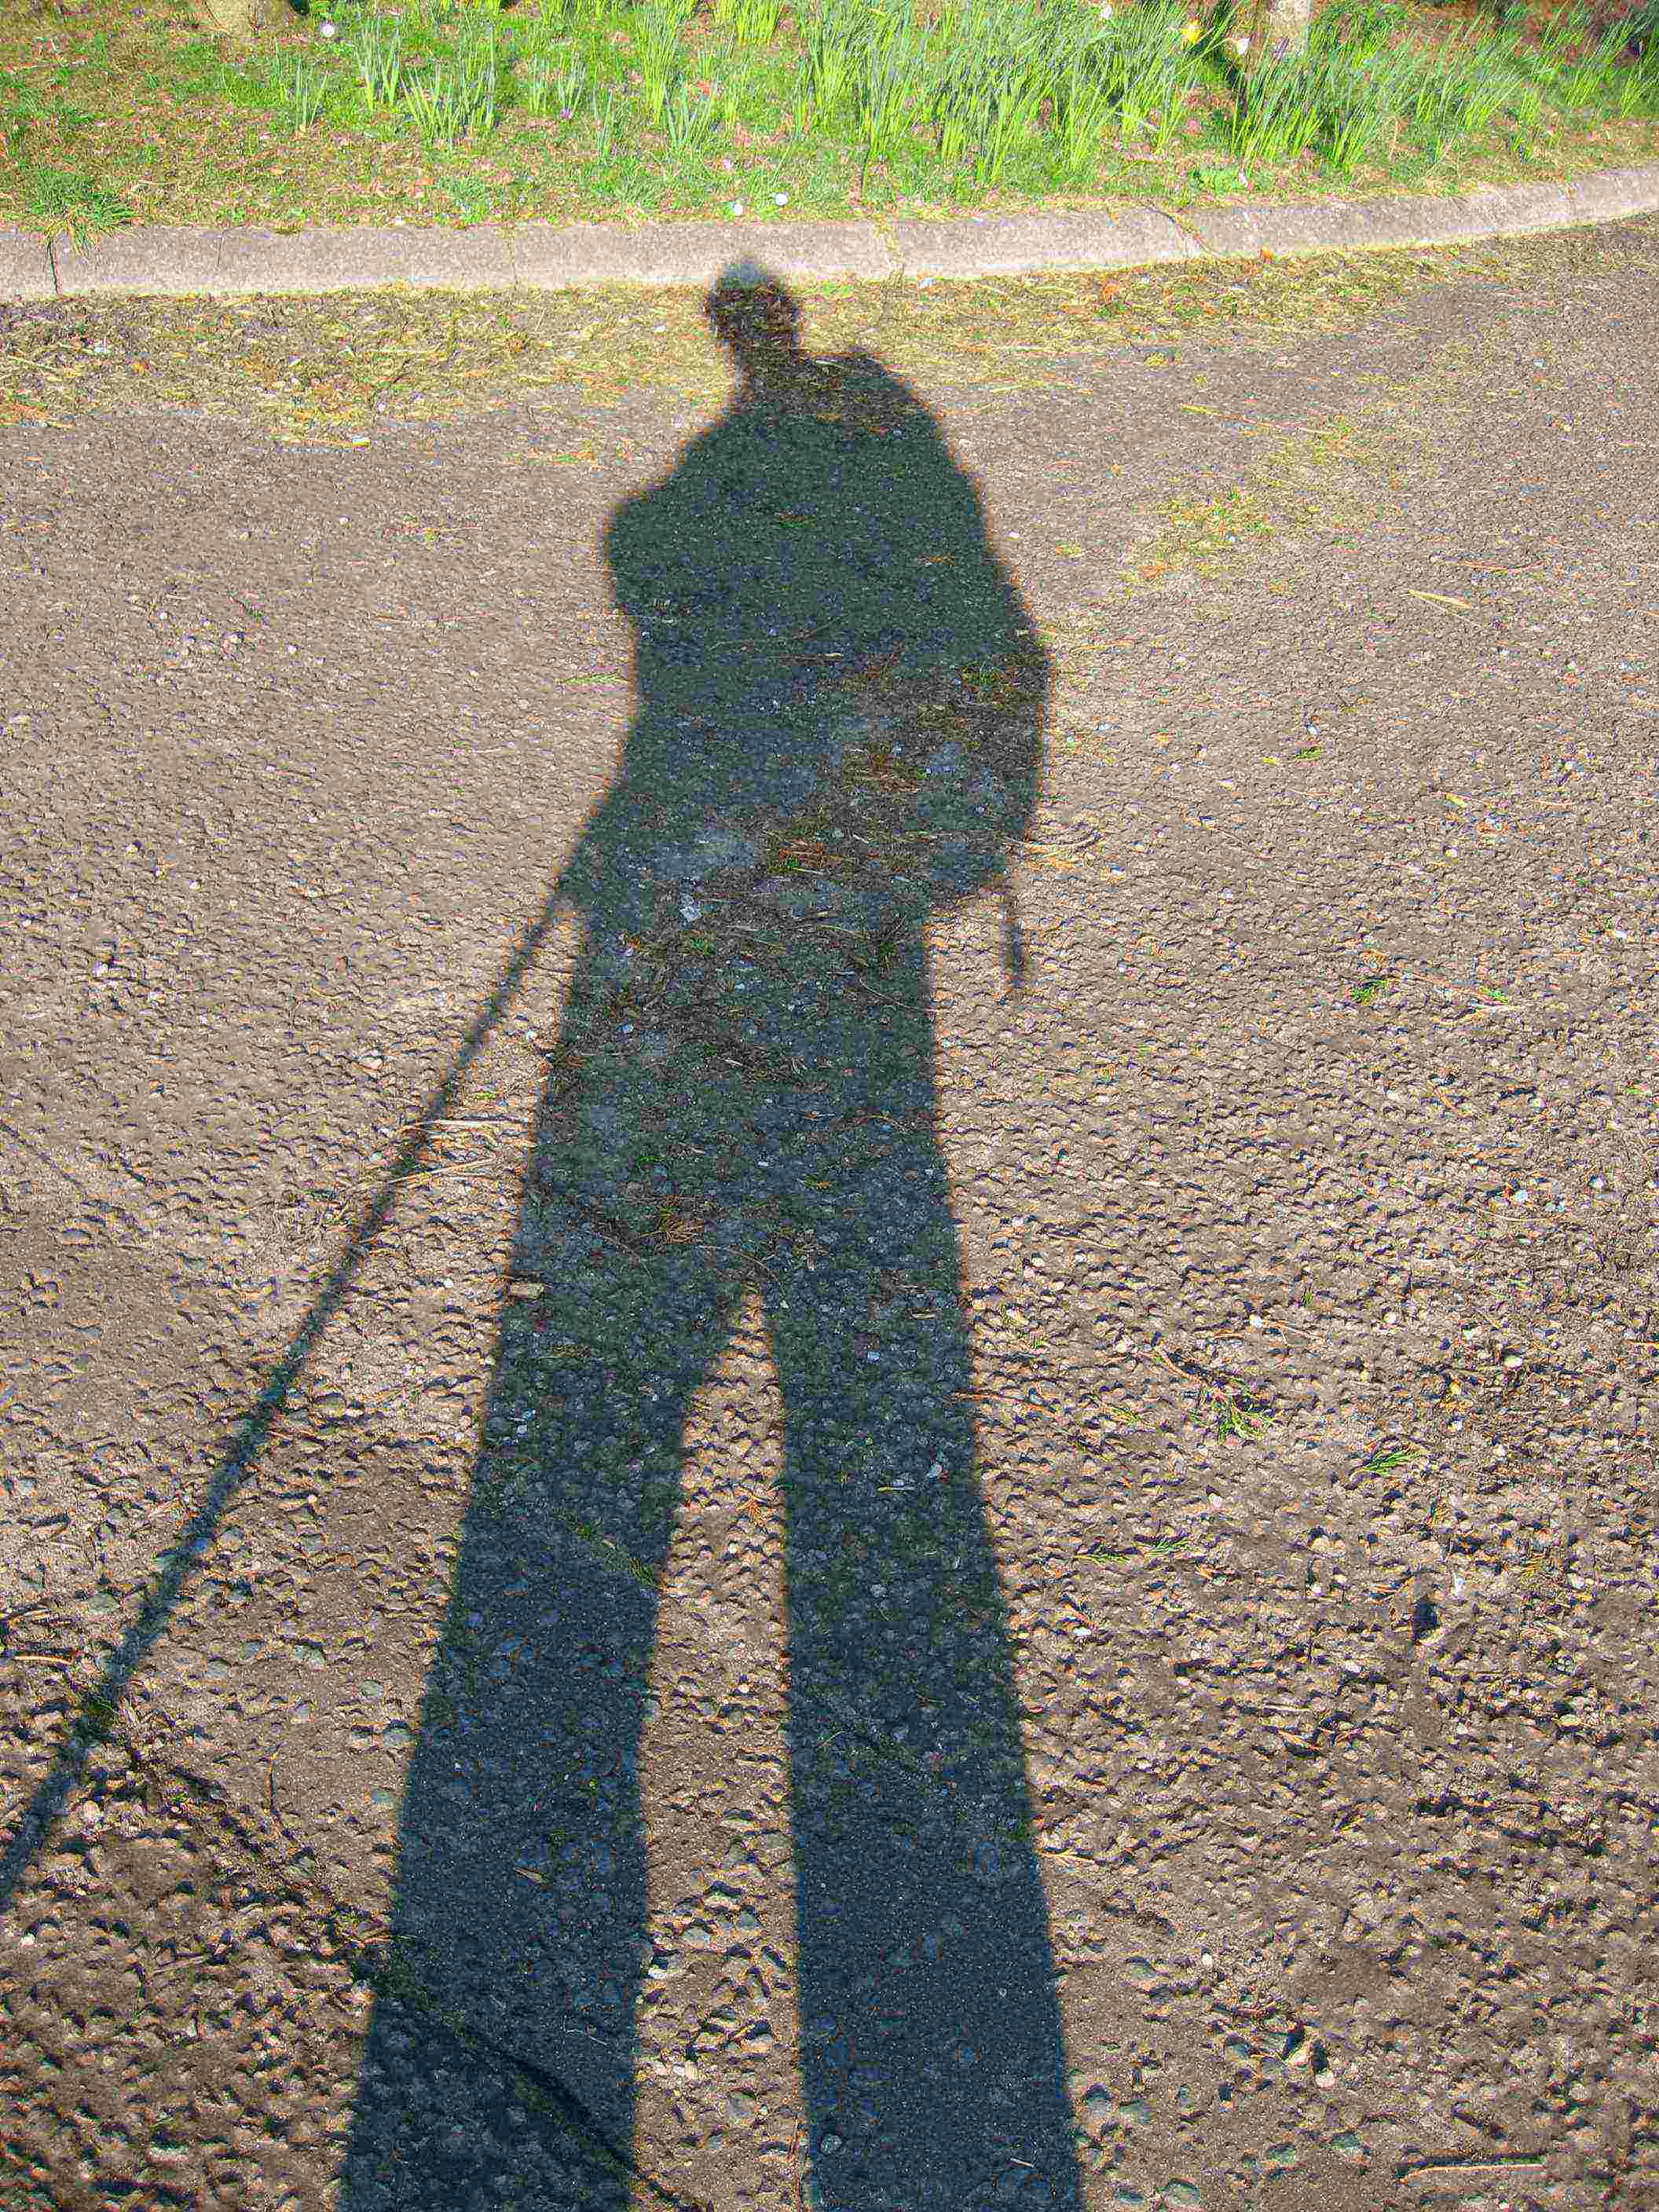 DN15 Eveneing shadows near Falfield